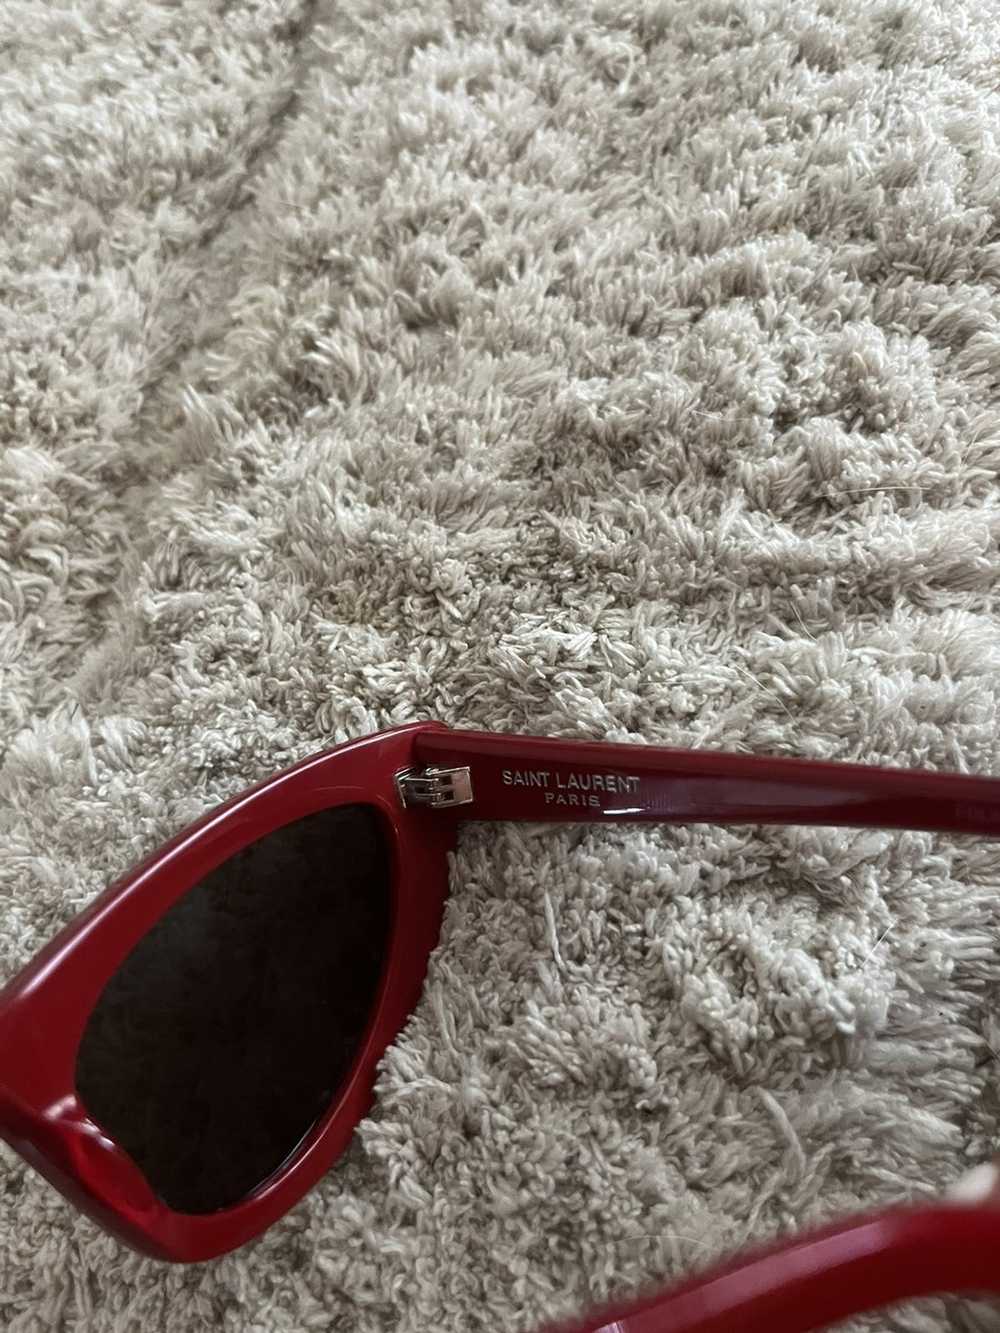 Saint Laurent Paris Lily sunglasses - image 3